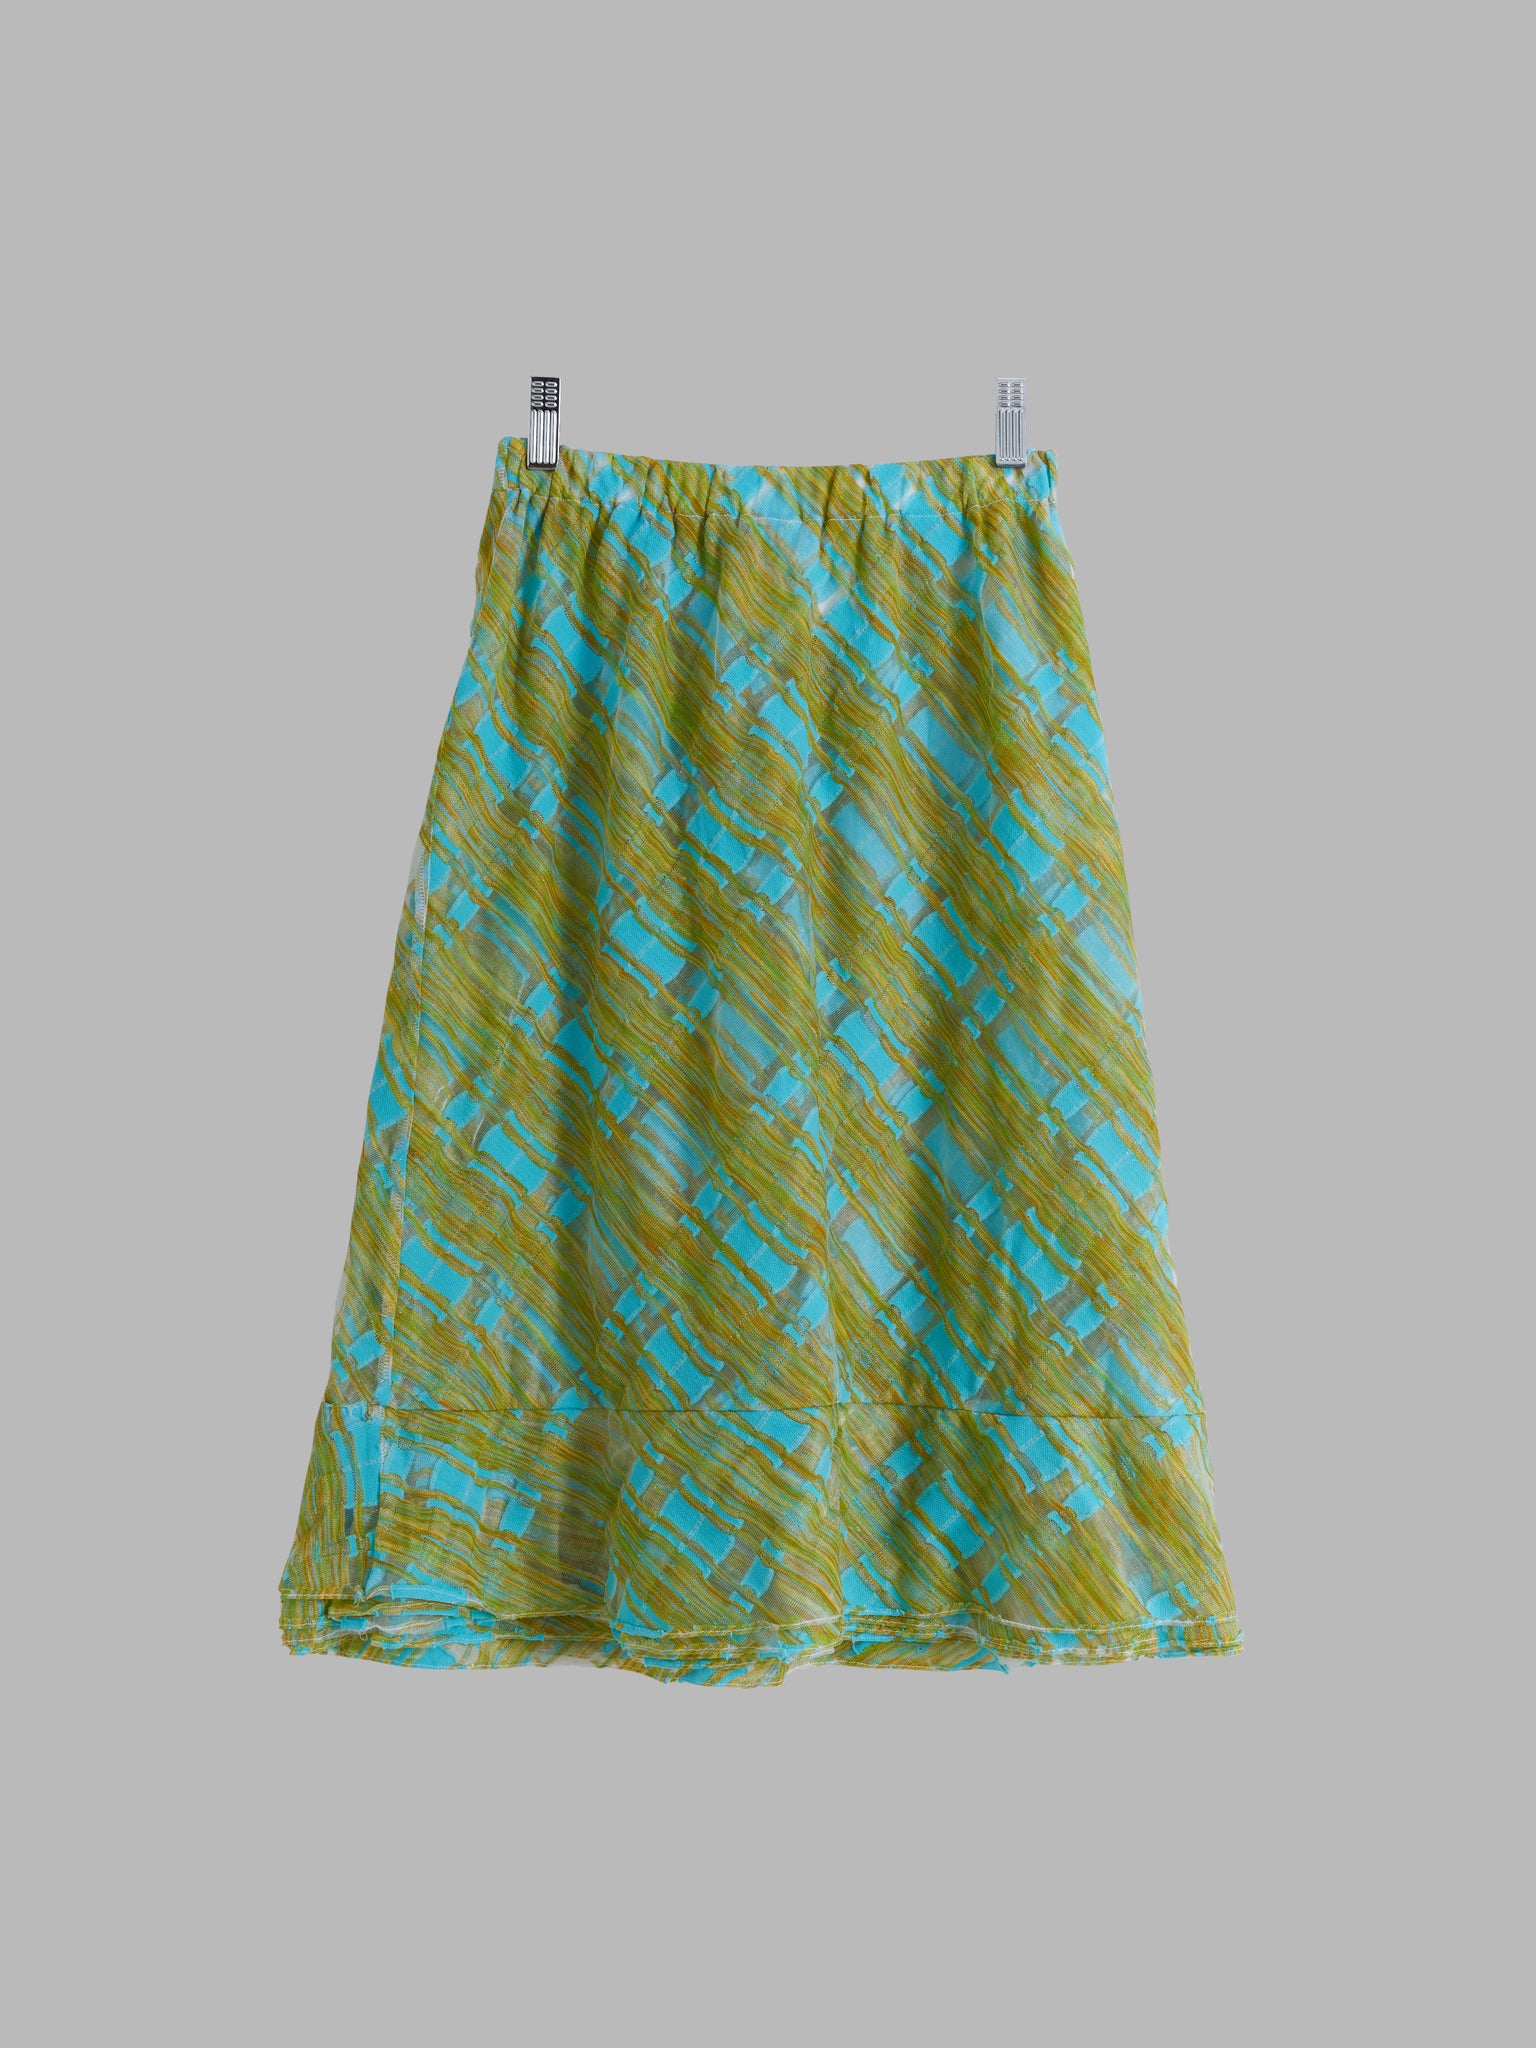 Comme des Garcons SS2001 fluorescent green blue mesh elastic waist skirt - S